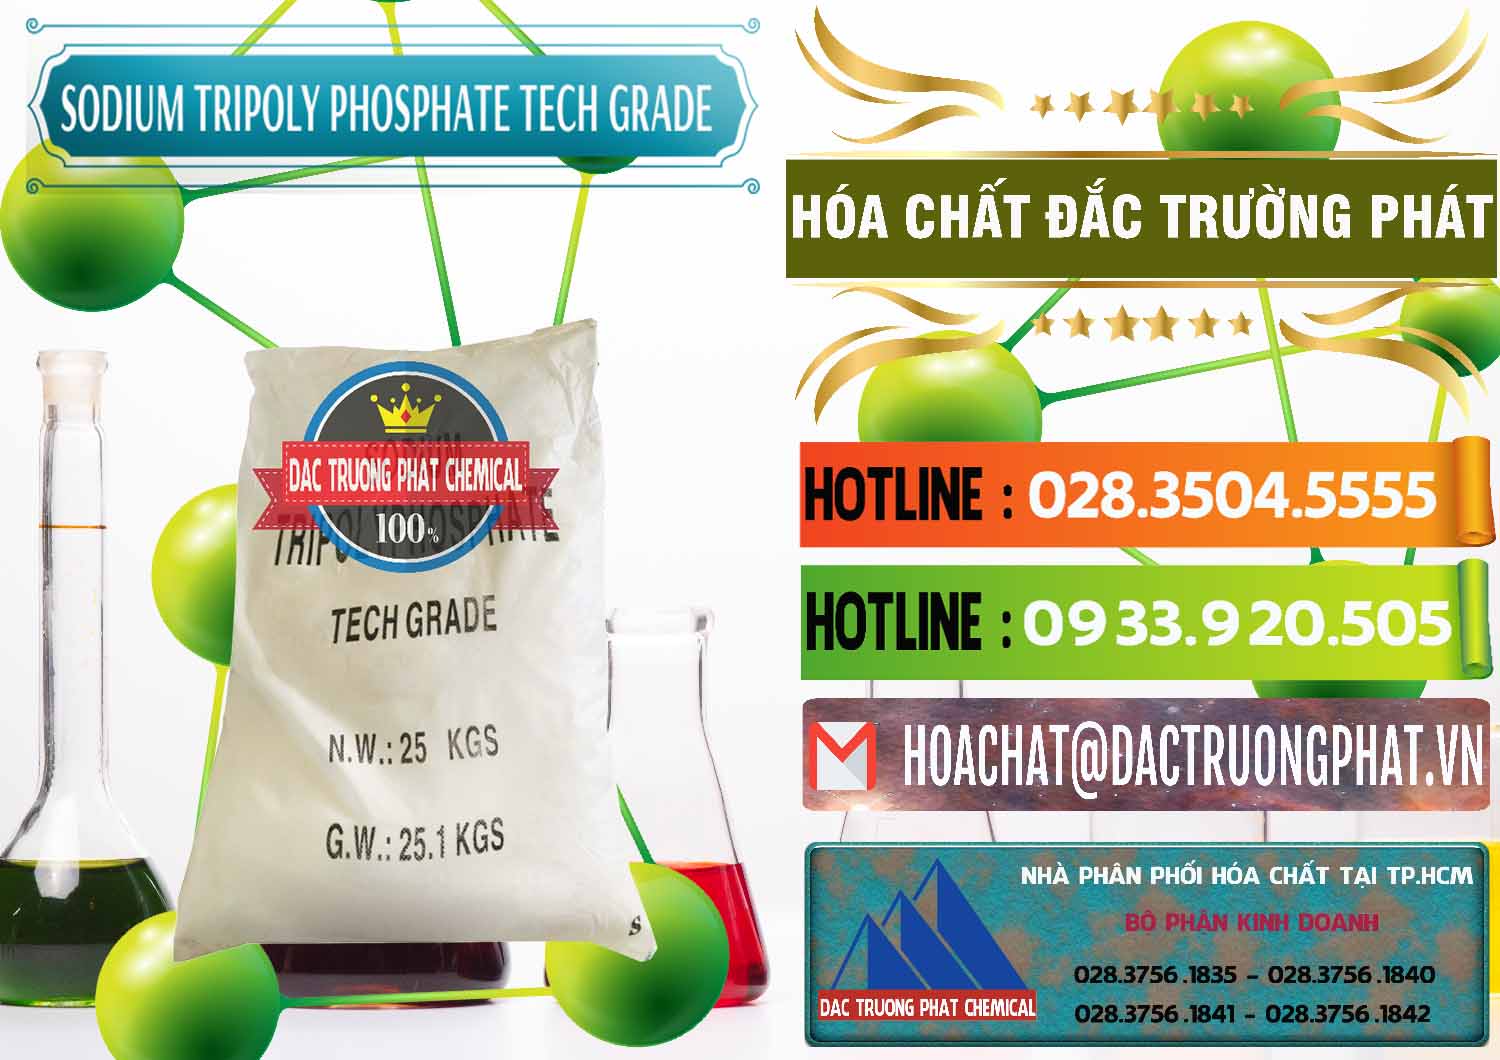 Đơn vị kinh doanh & bán Sodium Tripoly Phosphate - STPP Tech Grade Trung Quốc China - 0453 - Nhà cung ứng _ phân phối hóa chất tại TP.HCM - cungcaphoachat.com.vn